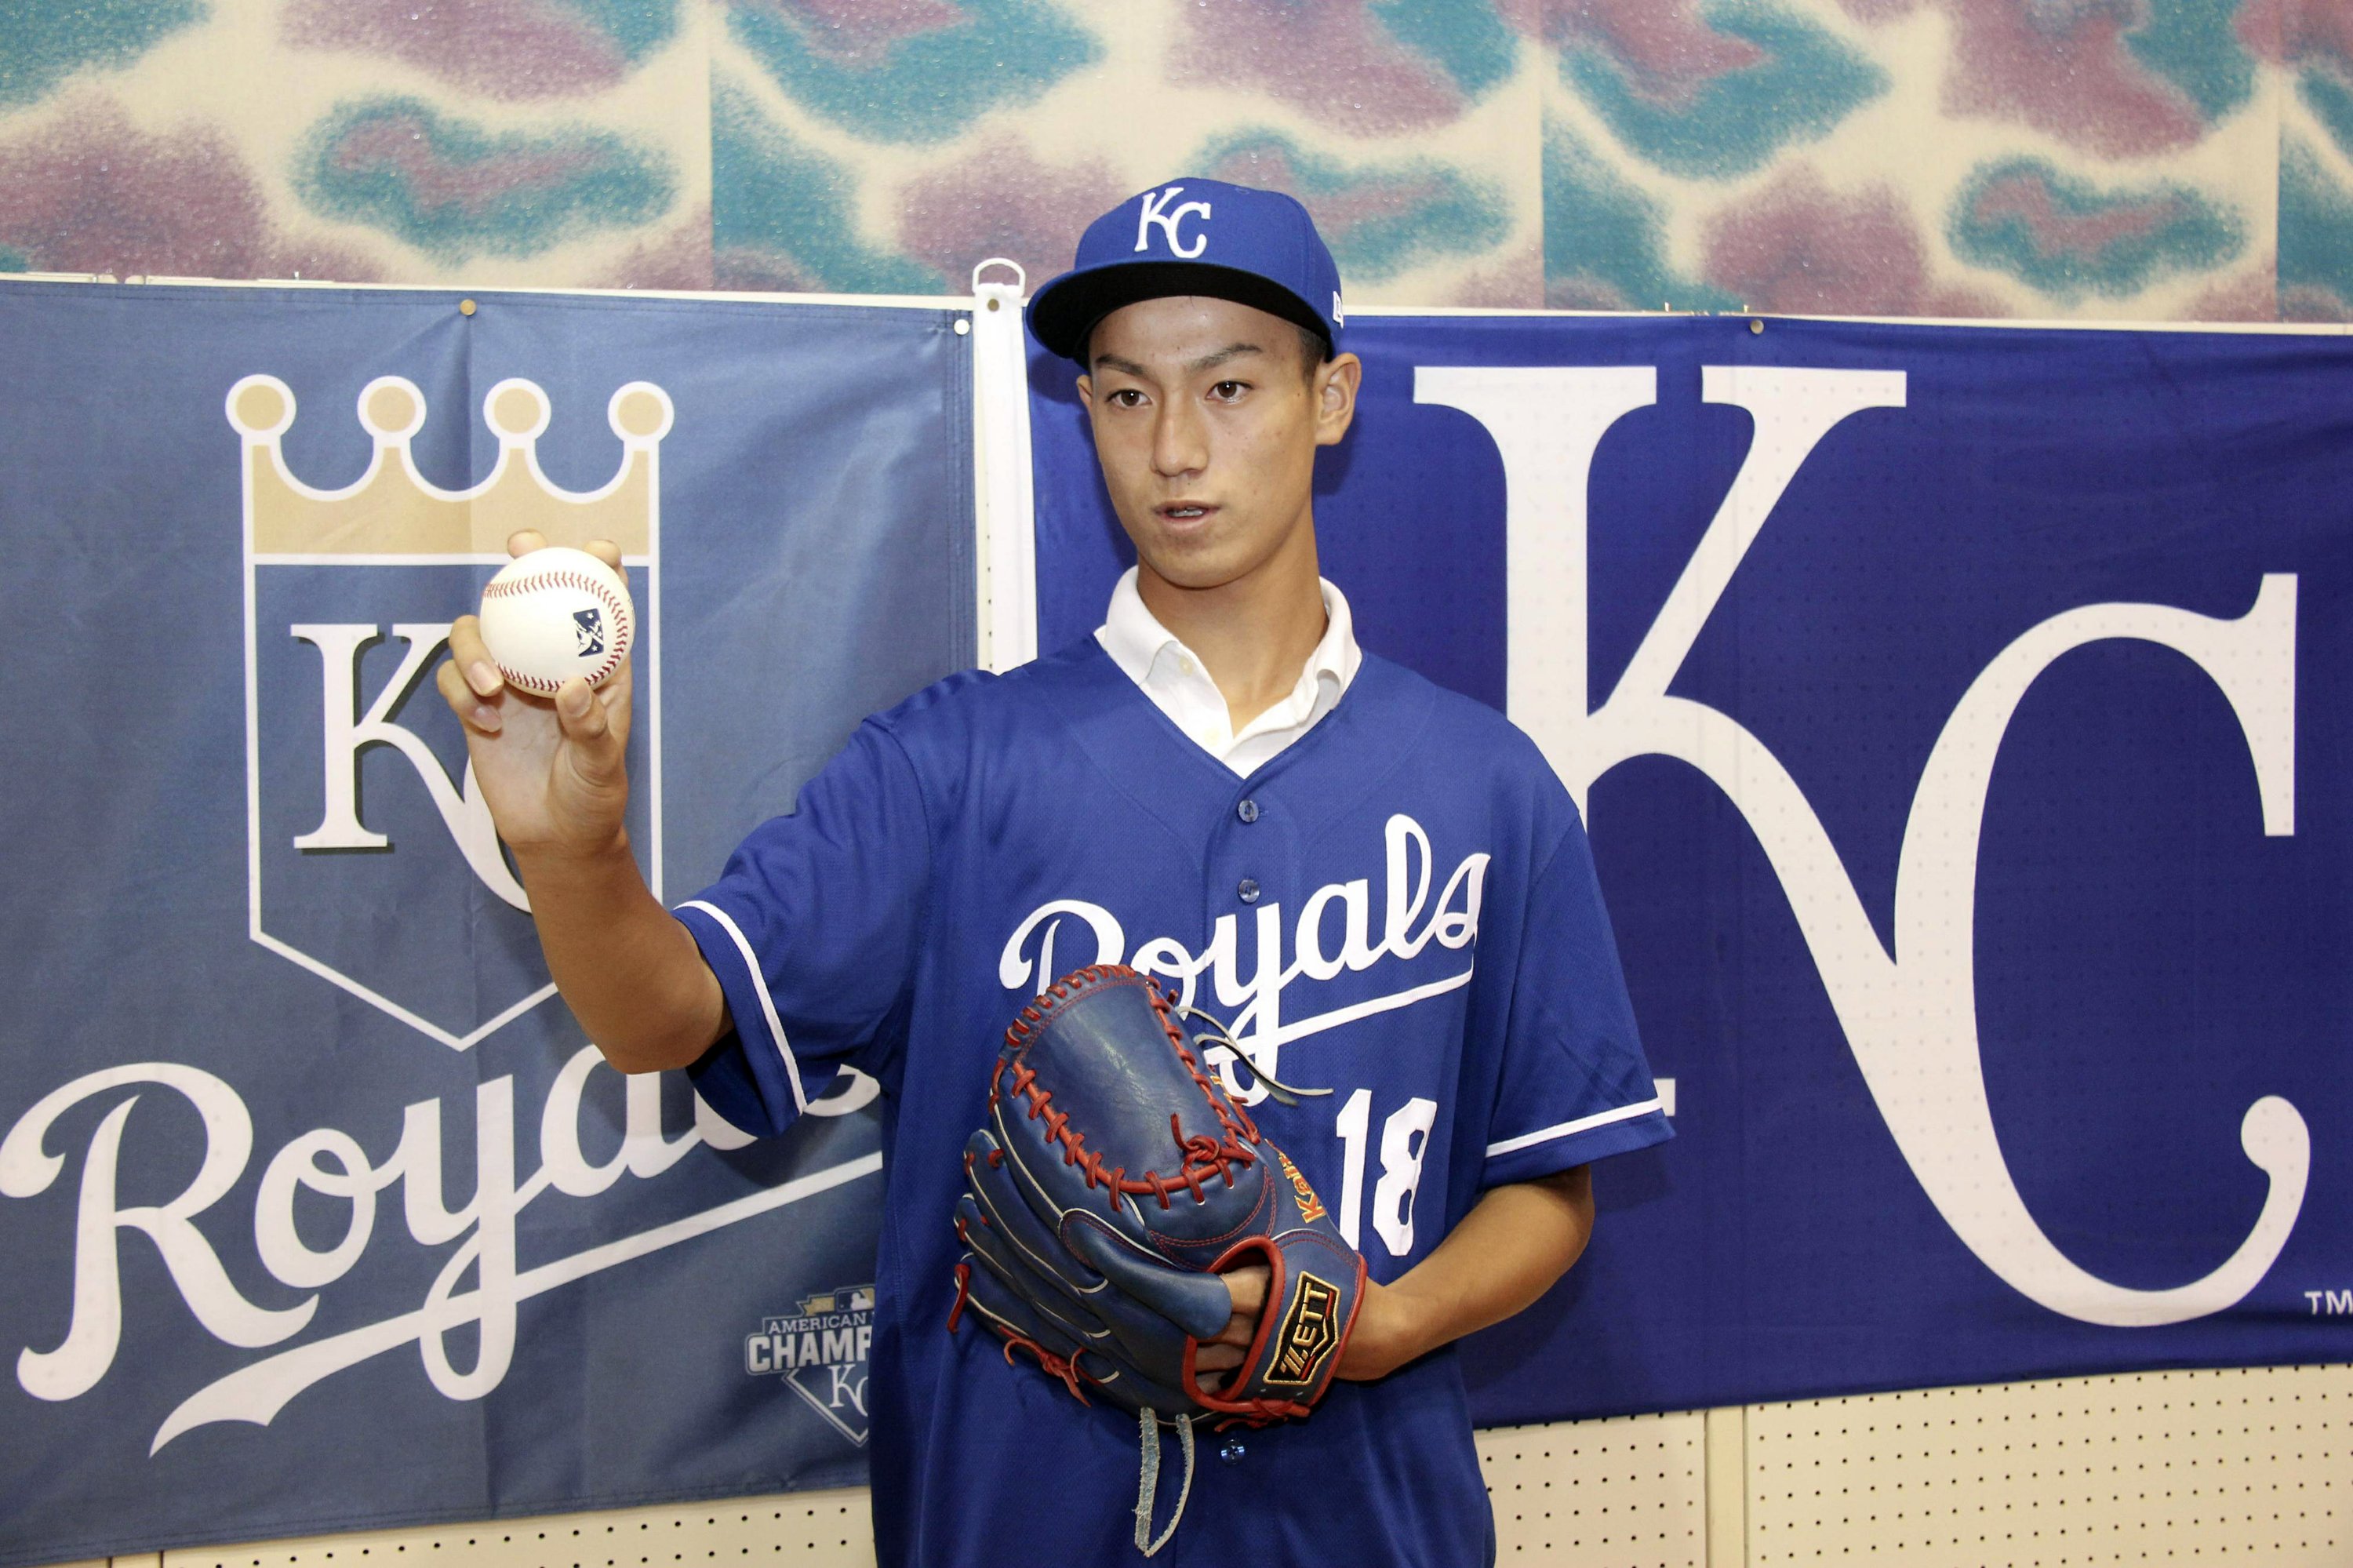 Det kongelige team underskrev en 16-årig japansk high school pitcher